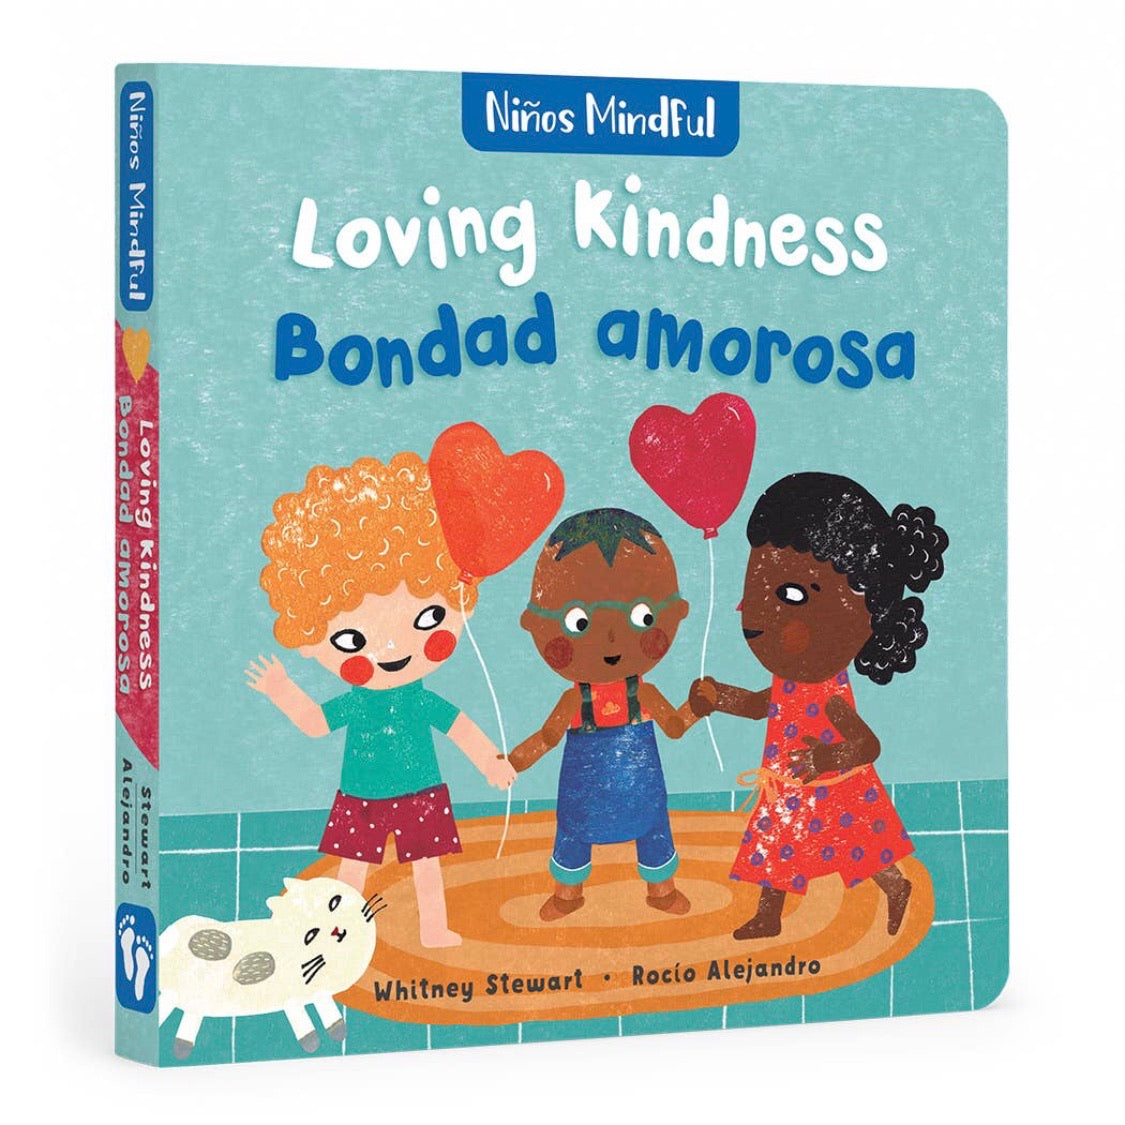 Loving Kindness/ Bondad amorosa